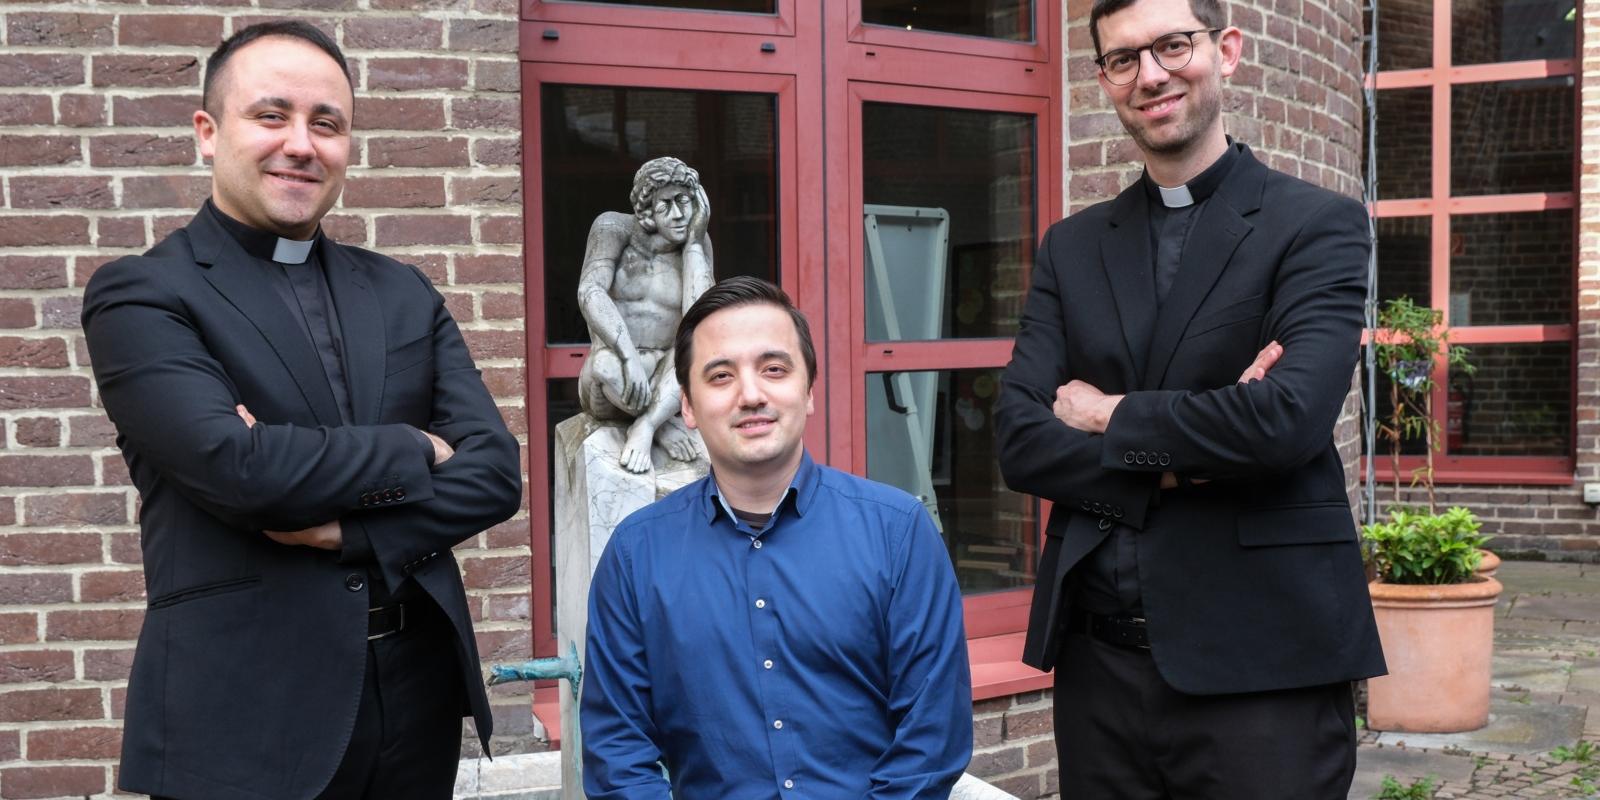 Werden am 04. Juni 2023 zu Diakonen geweiht: Javier Cenoz Larrea, Takuro Johannes Shimizu und Stefano Da Rin Zanco (von links nach rechts)